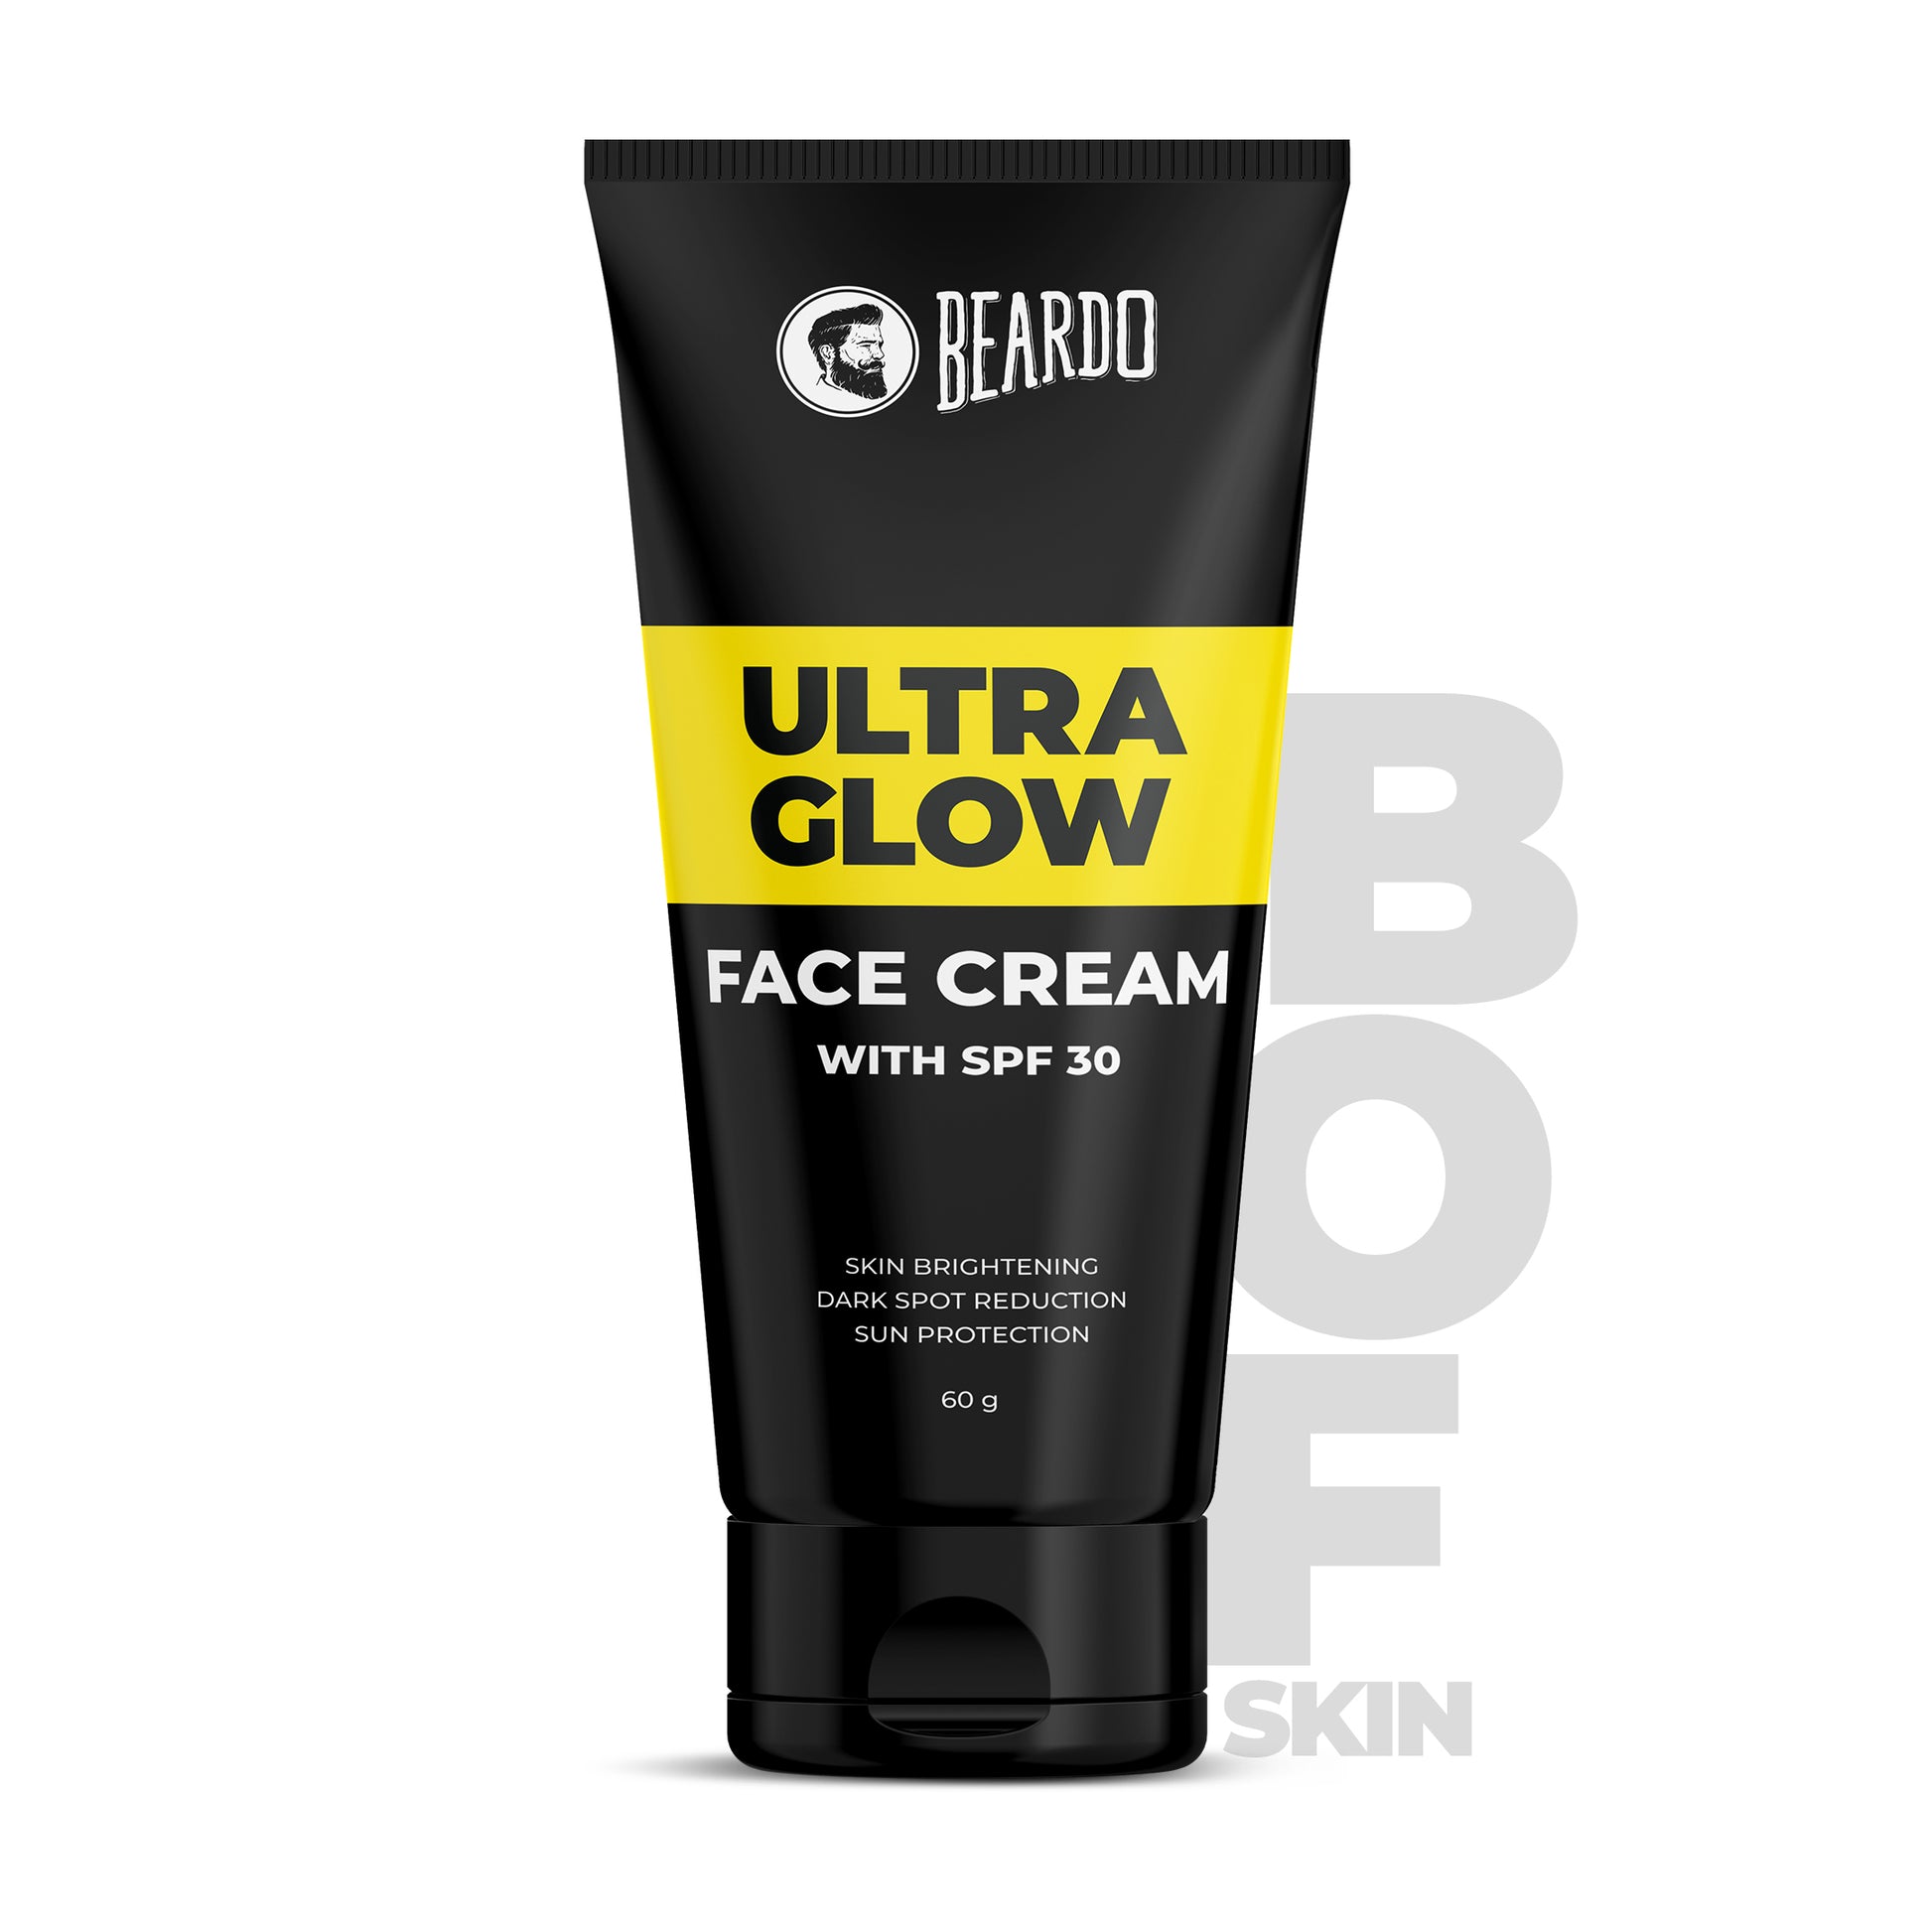 ultraglow face cream, beardo ultraglow cream, beardo ultraglow face cream, beardo face cream, face cream for men